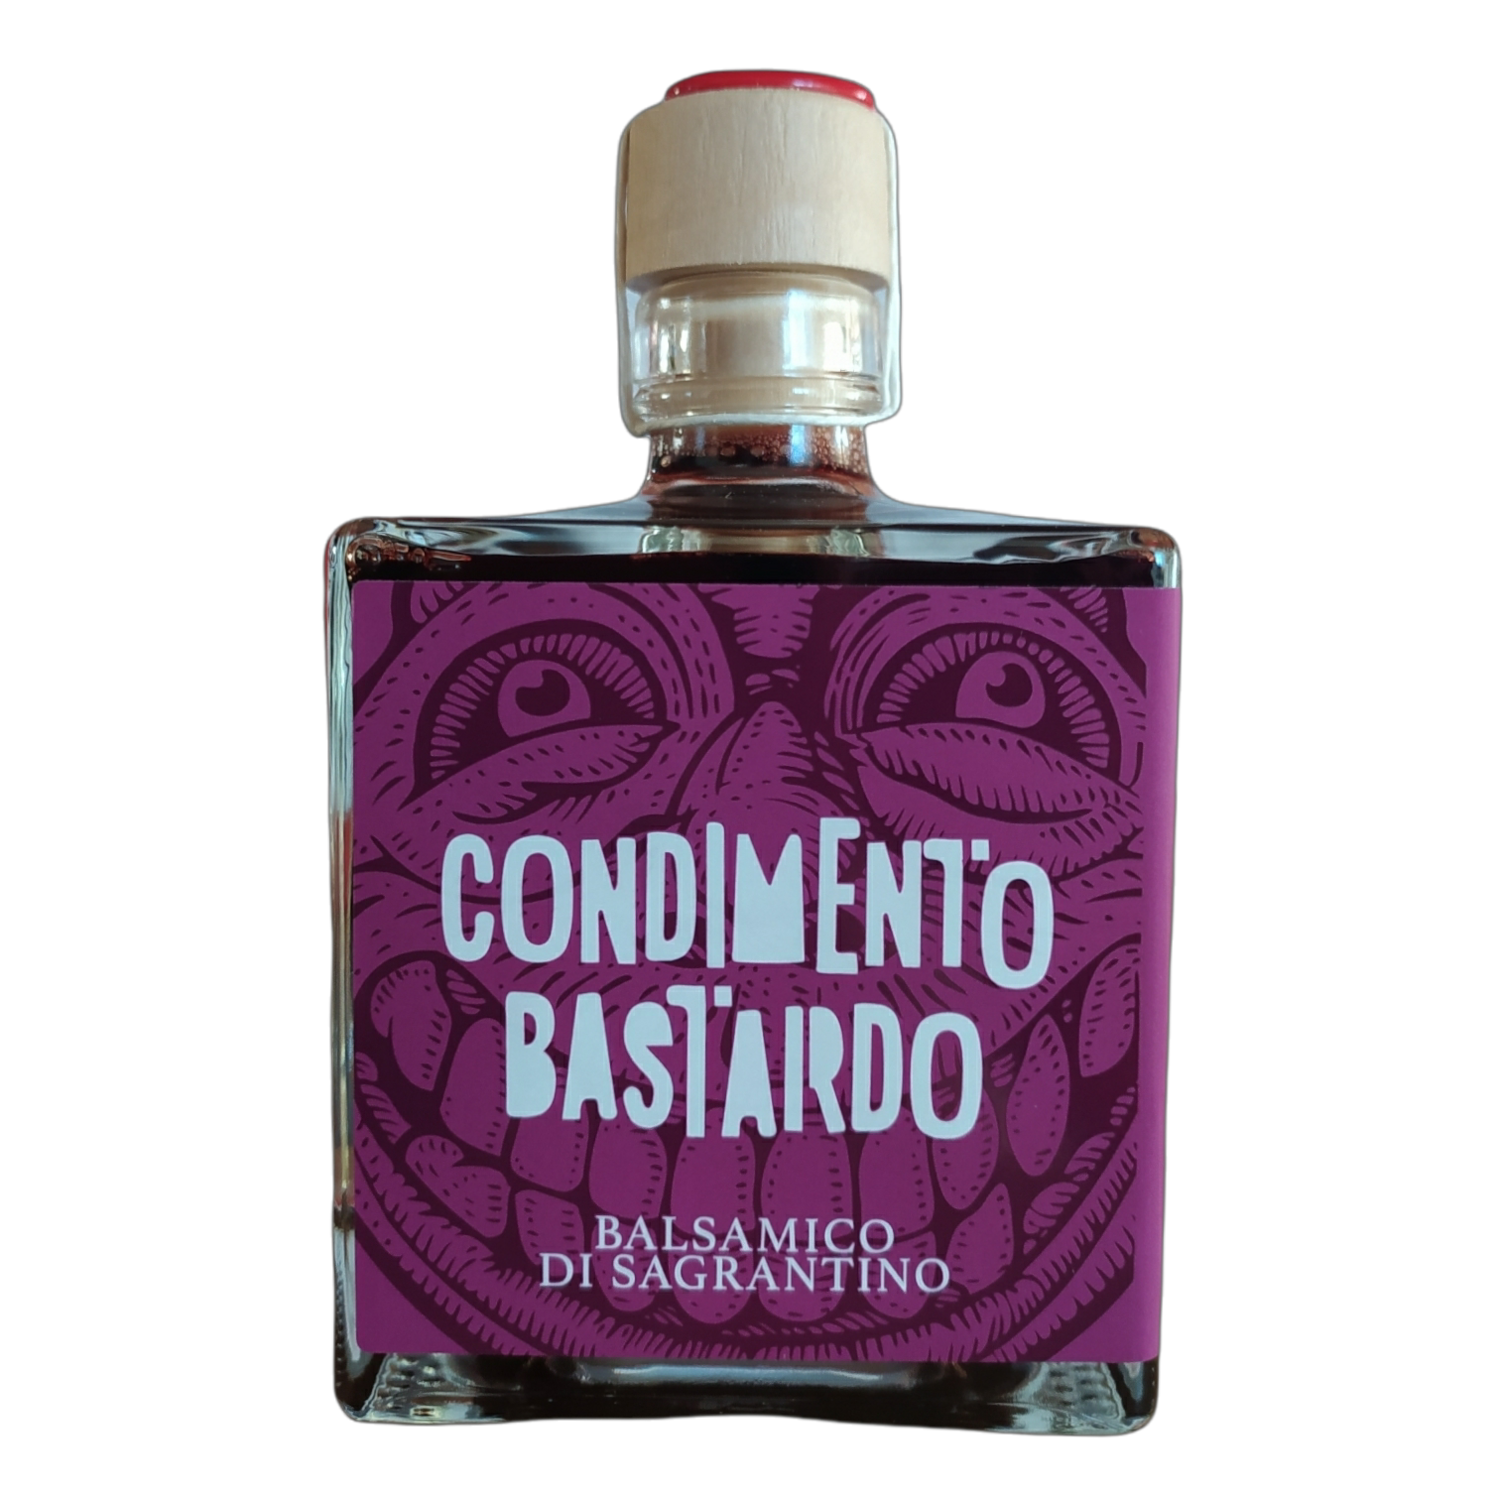 CONDIMENTO BASTARDO - 250ml